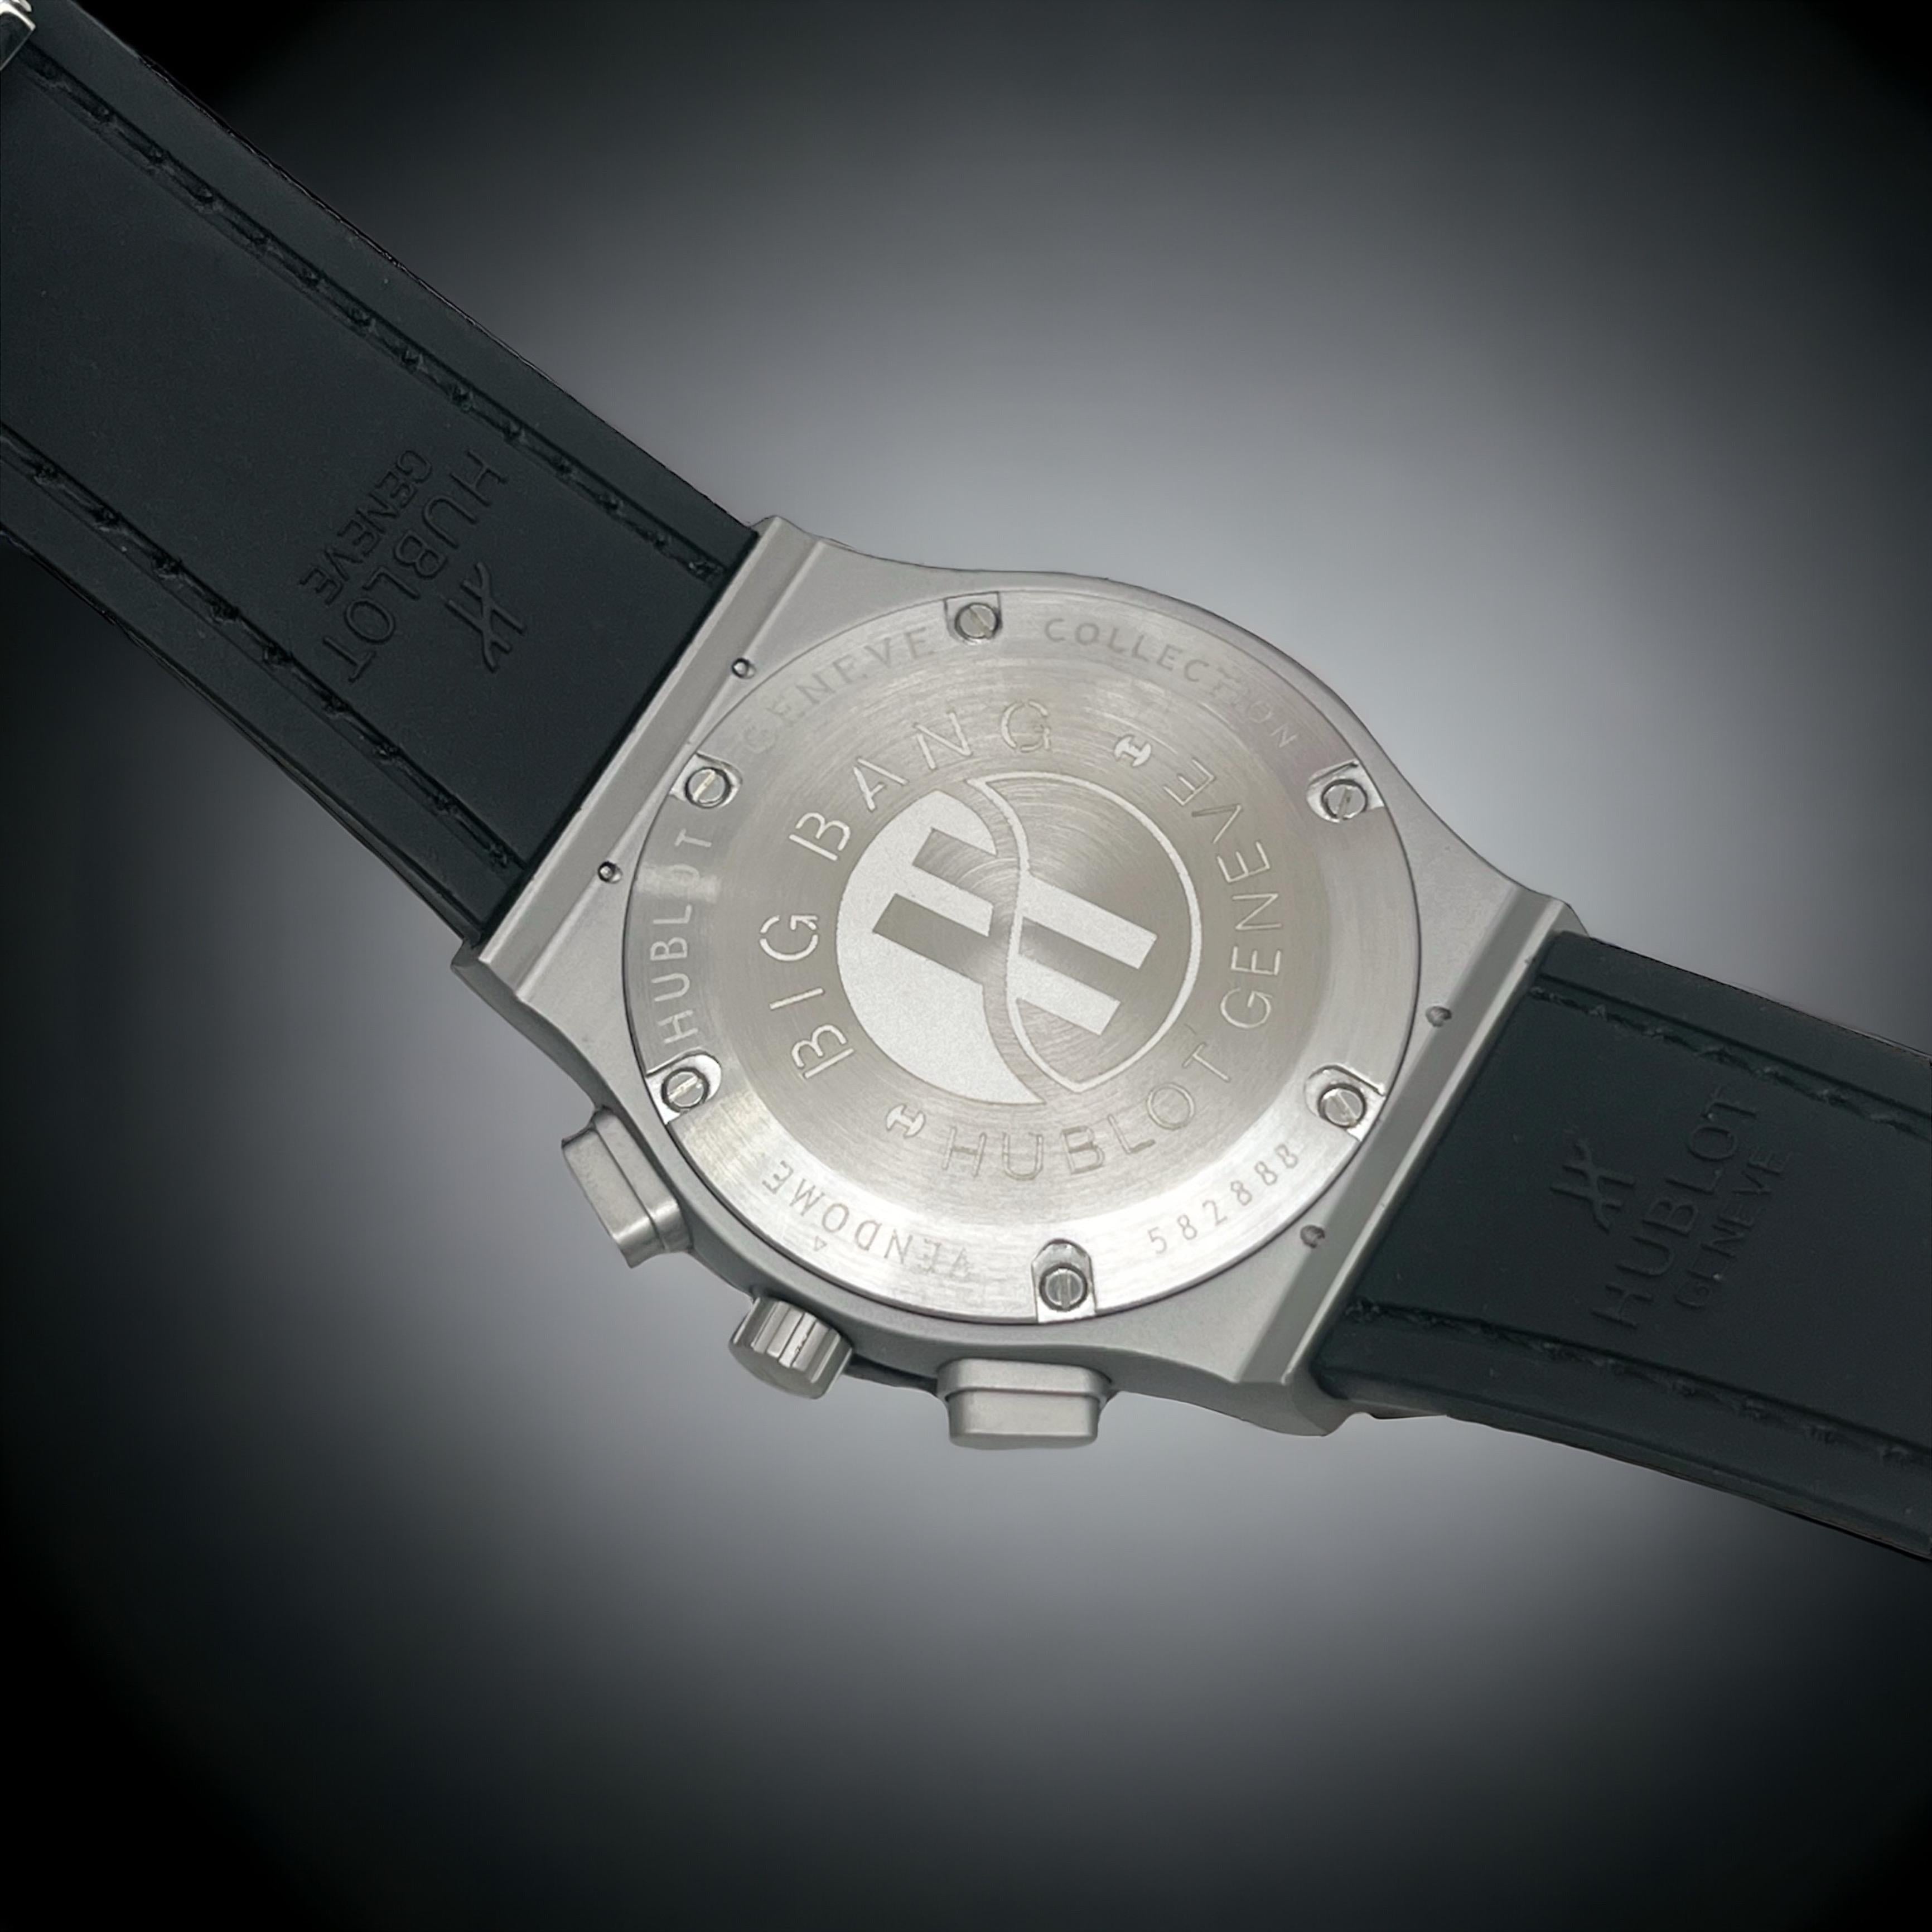 Big bang premium quality luxury watch - AmazingBaba